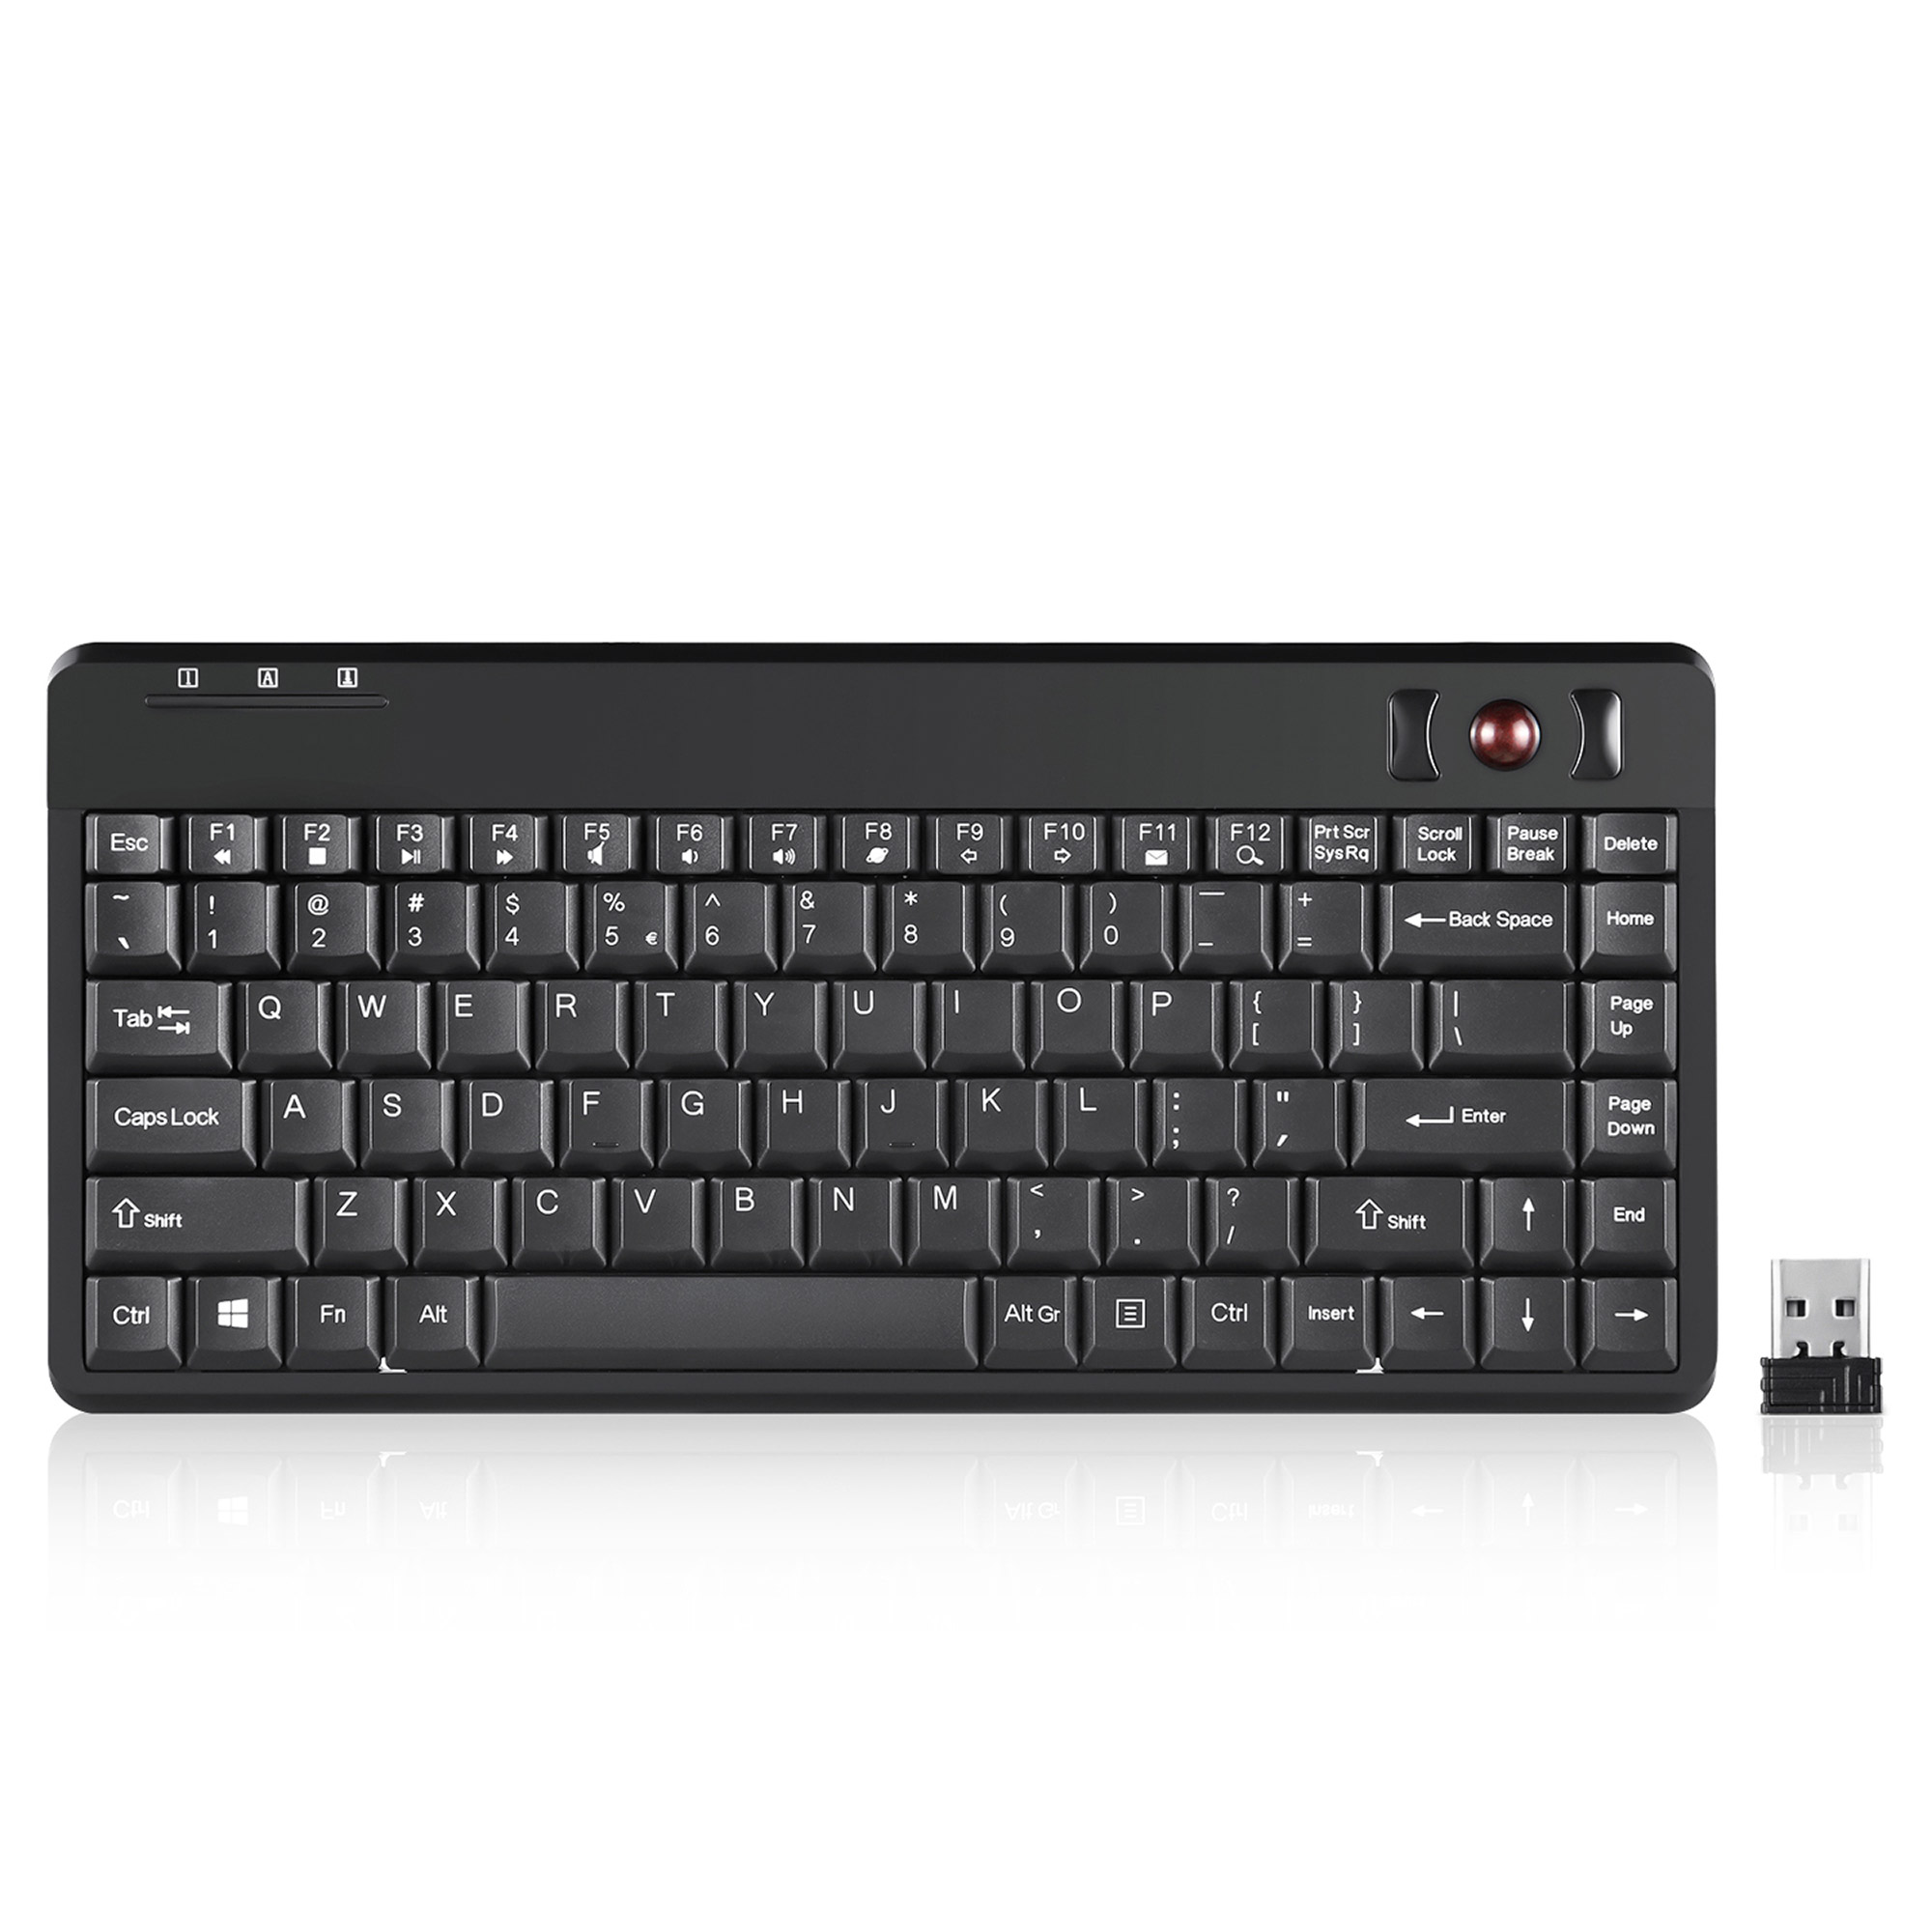 Perixx PERIBOARD-706 PLUS US, Mini Tastatur, Trackball, schnurlos, schwarz